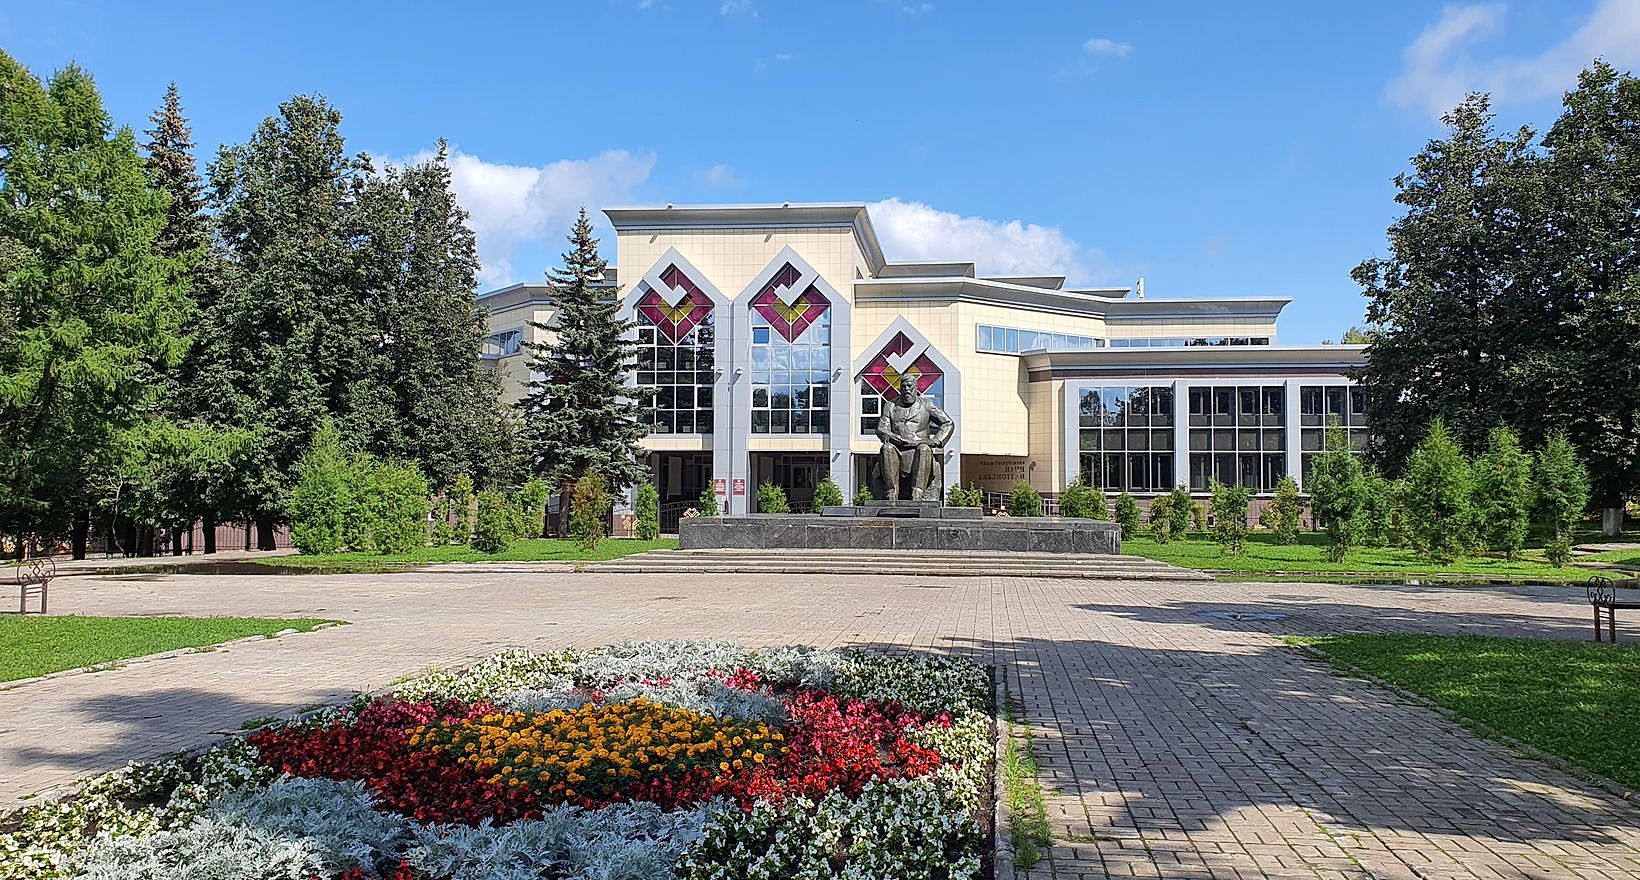 Национальная библиотека Чувашской Республики